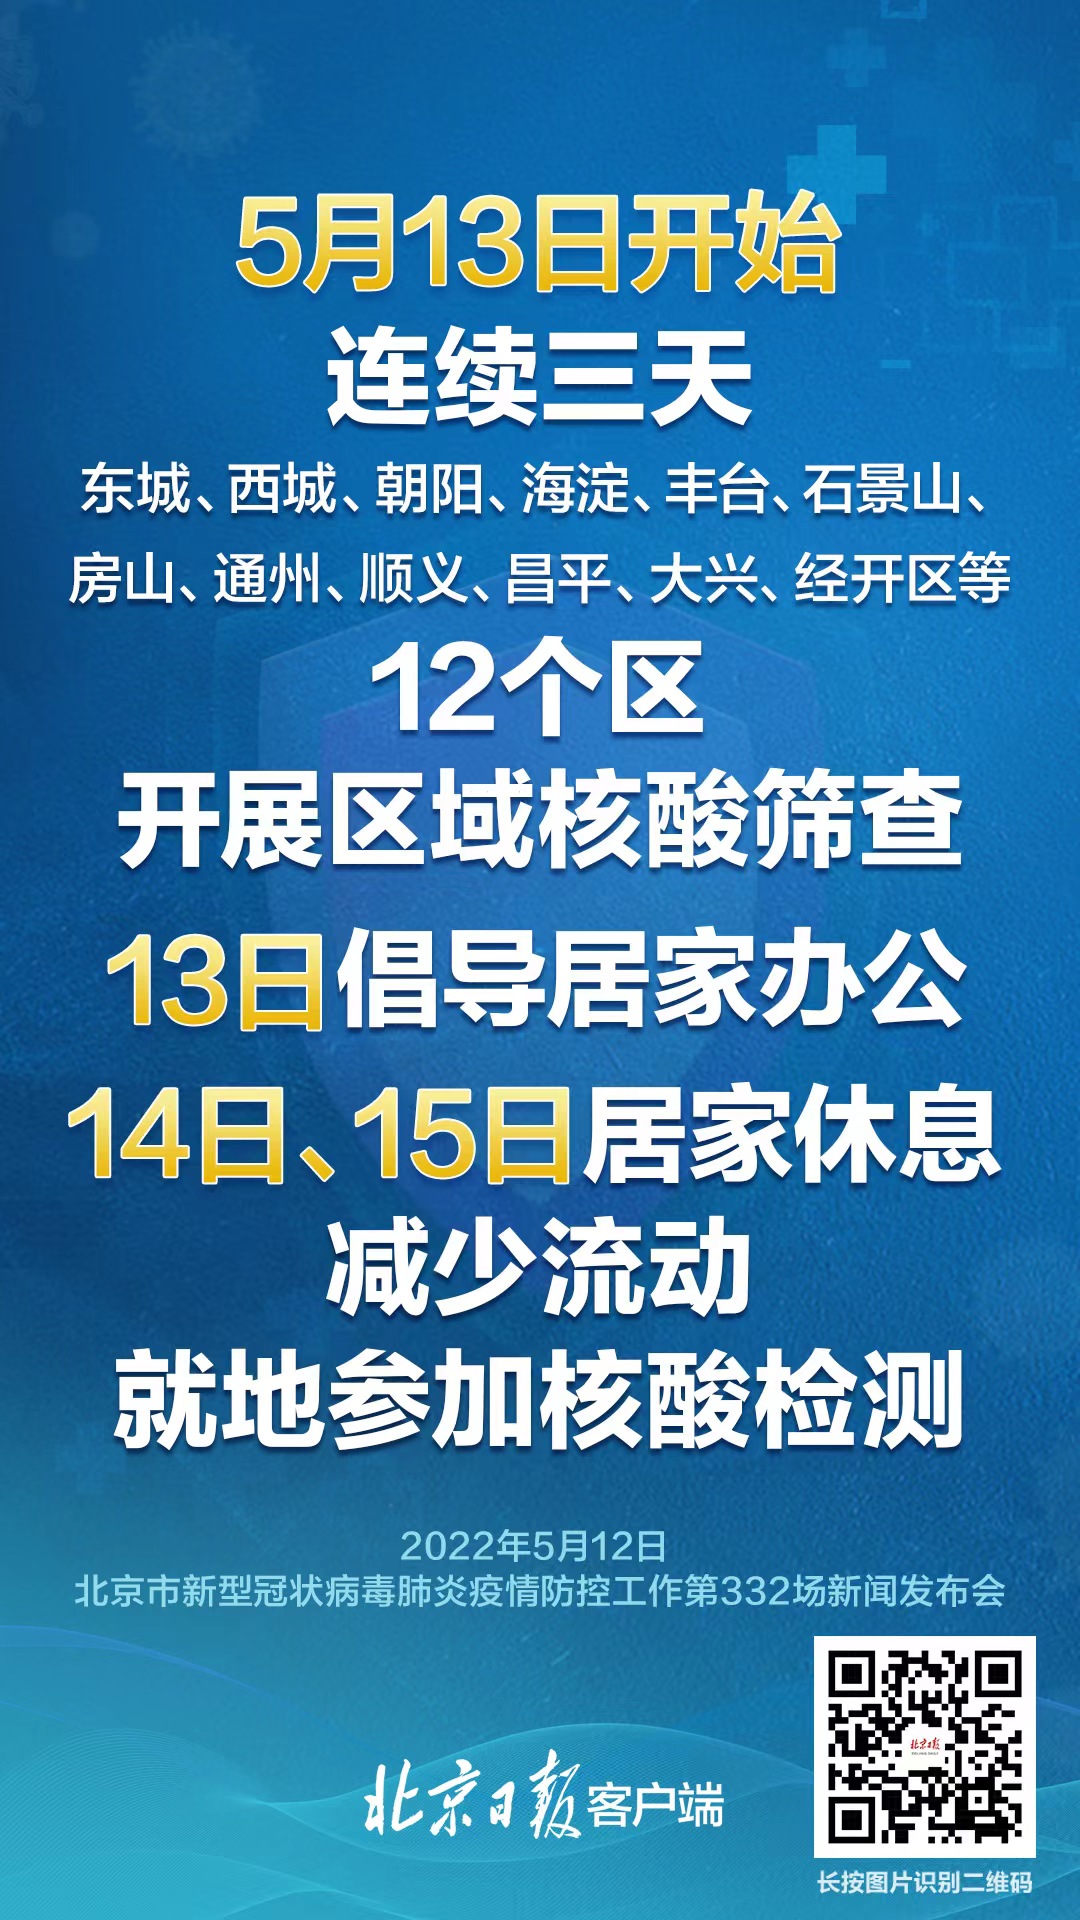 北京:各单位要督促所属人员积极参加核酸筛查，做好居家办公安排 (http://www.szcoop.com.cn/) 国内 第1张